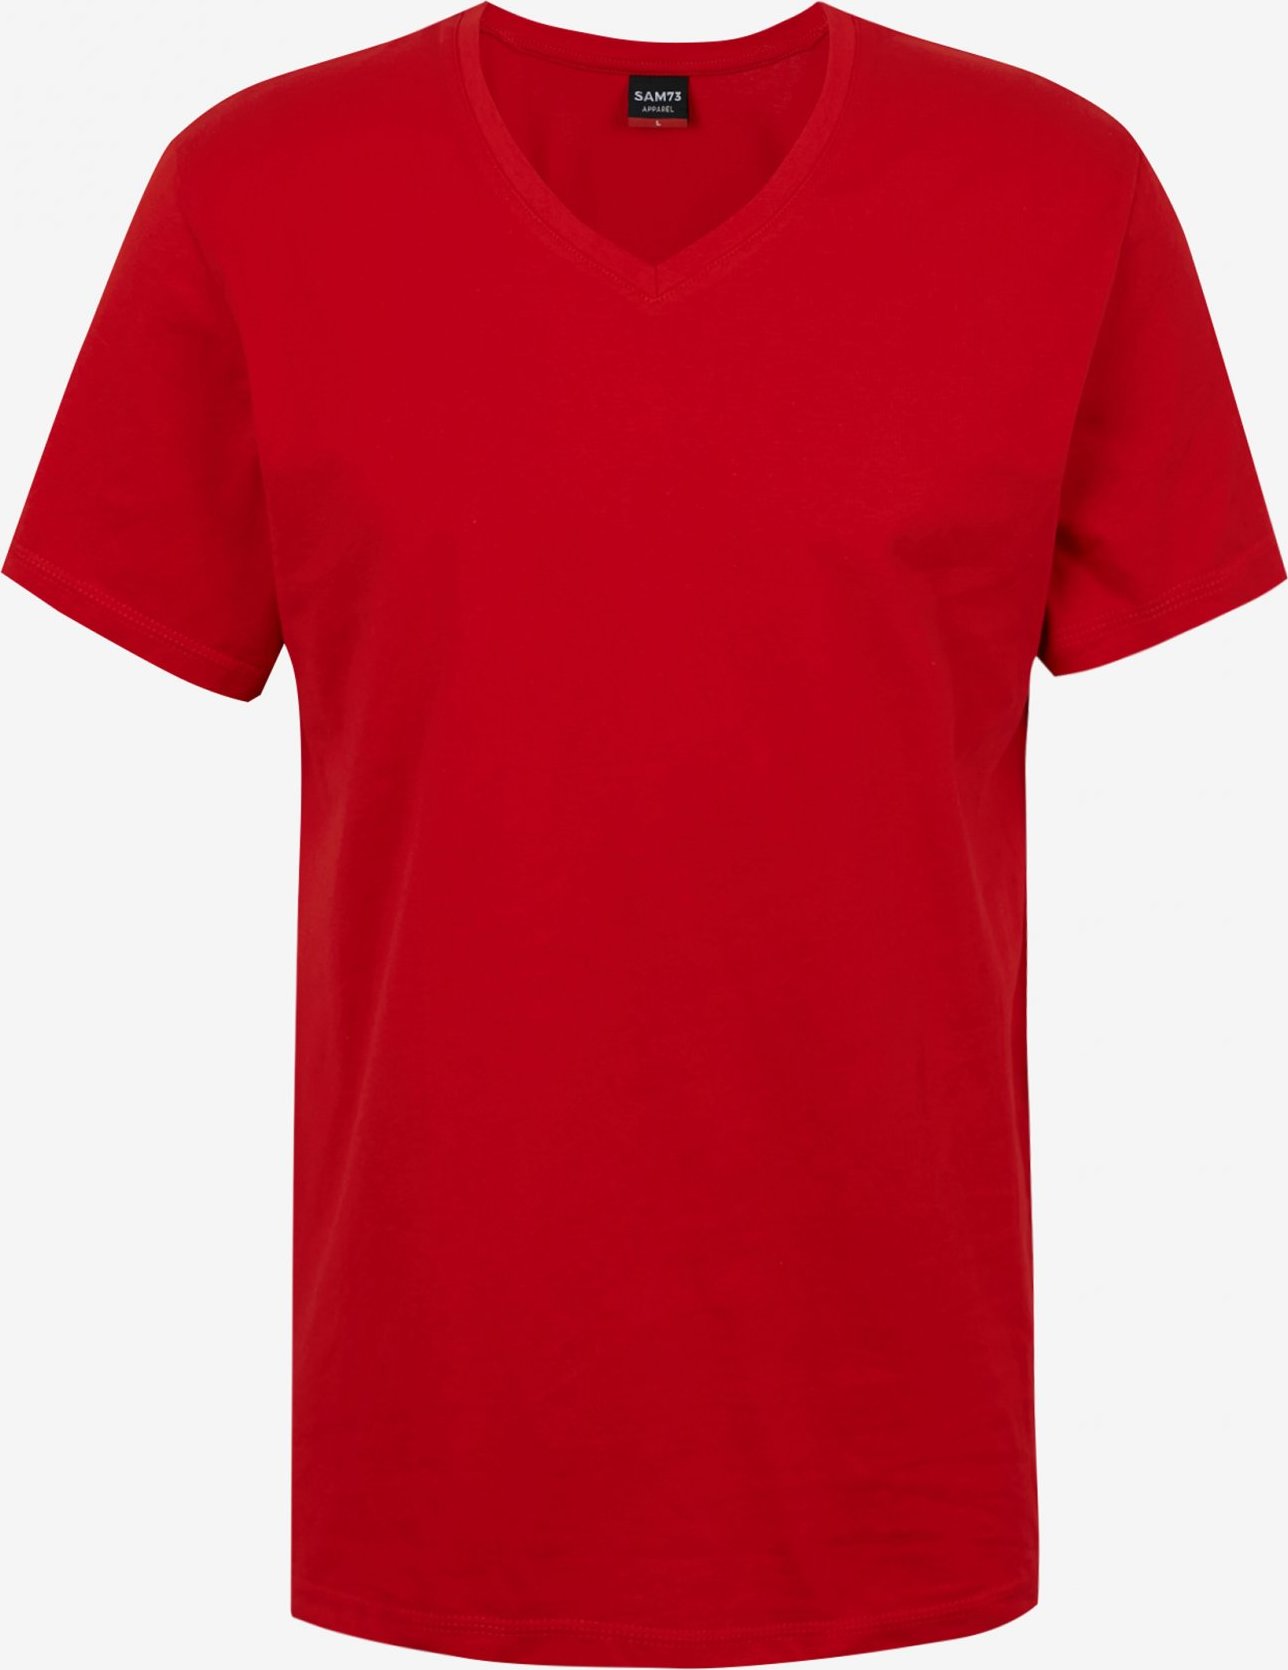 Pánské triko SAM73 blane červené Velikost: M